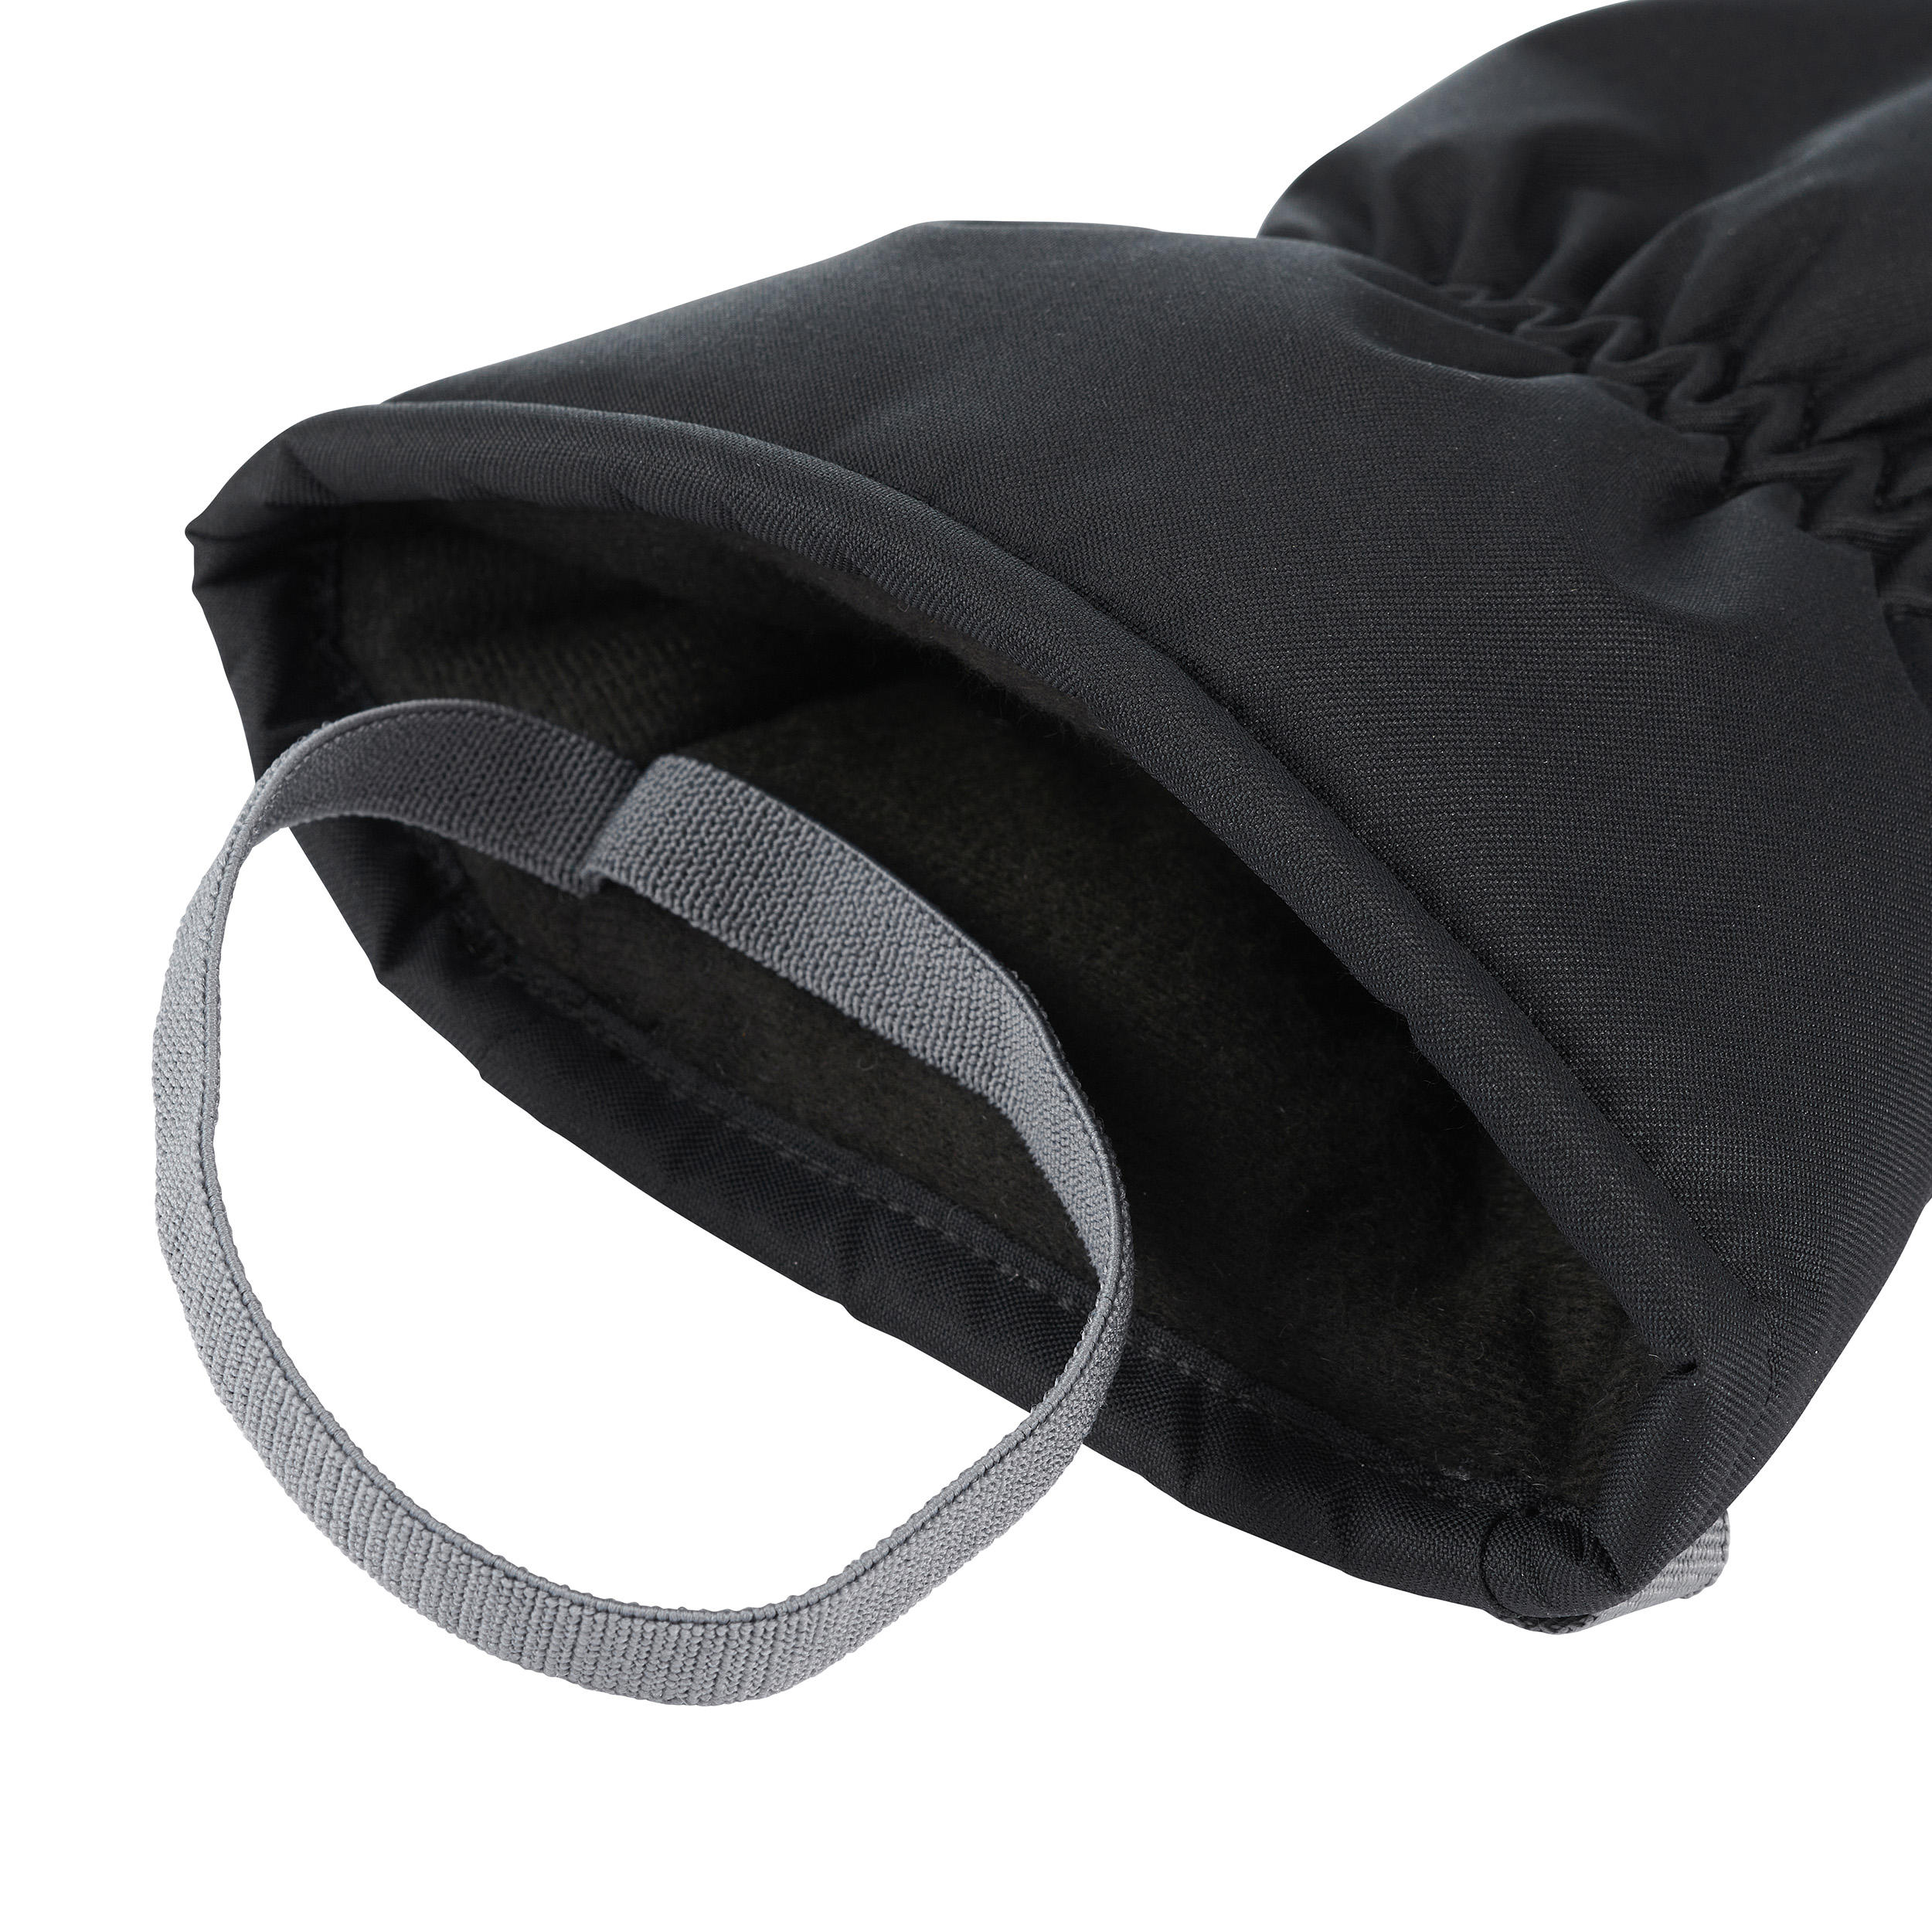 Warm Ski Gloves - Ski 100 Black - smoked black, Sand - Wedze - Decathlon